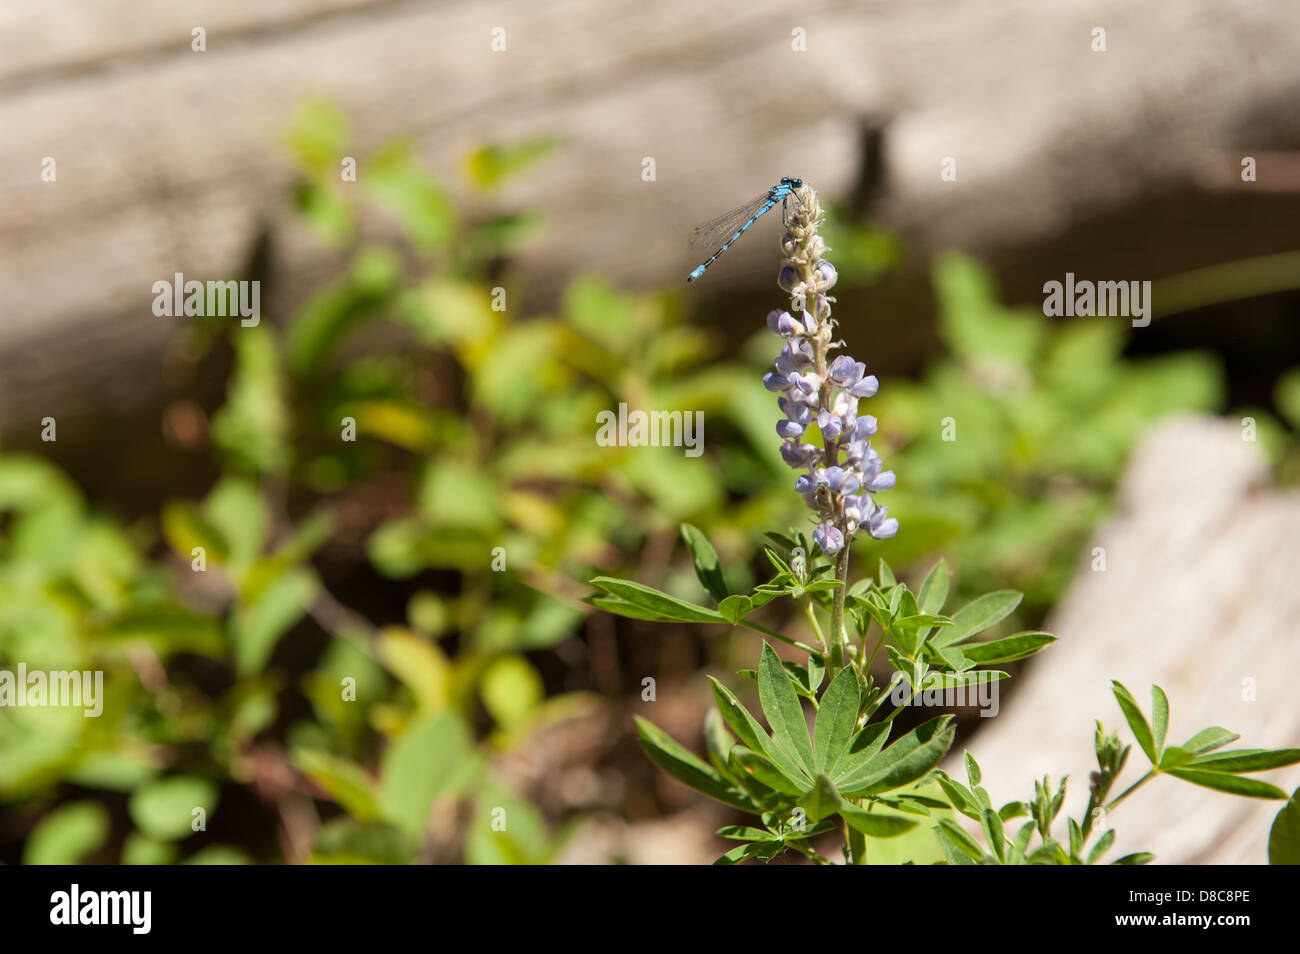 Fotografia di un blu damselfly poggia su un fiore di lupino, di fronte a una natura sfocata sullo sfondo. Foto Stock